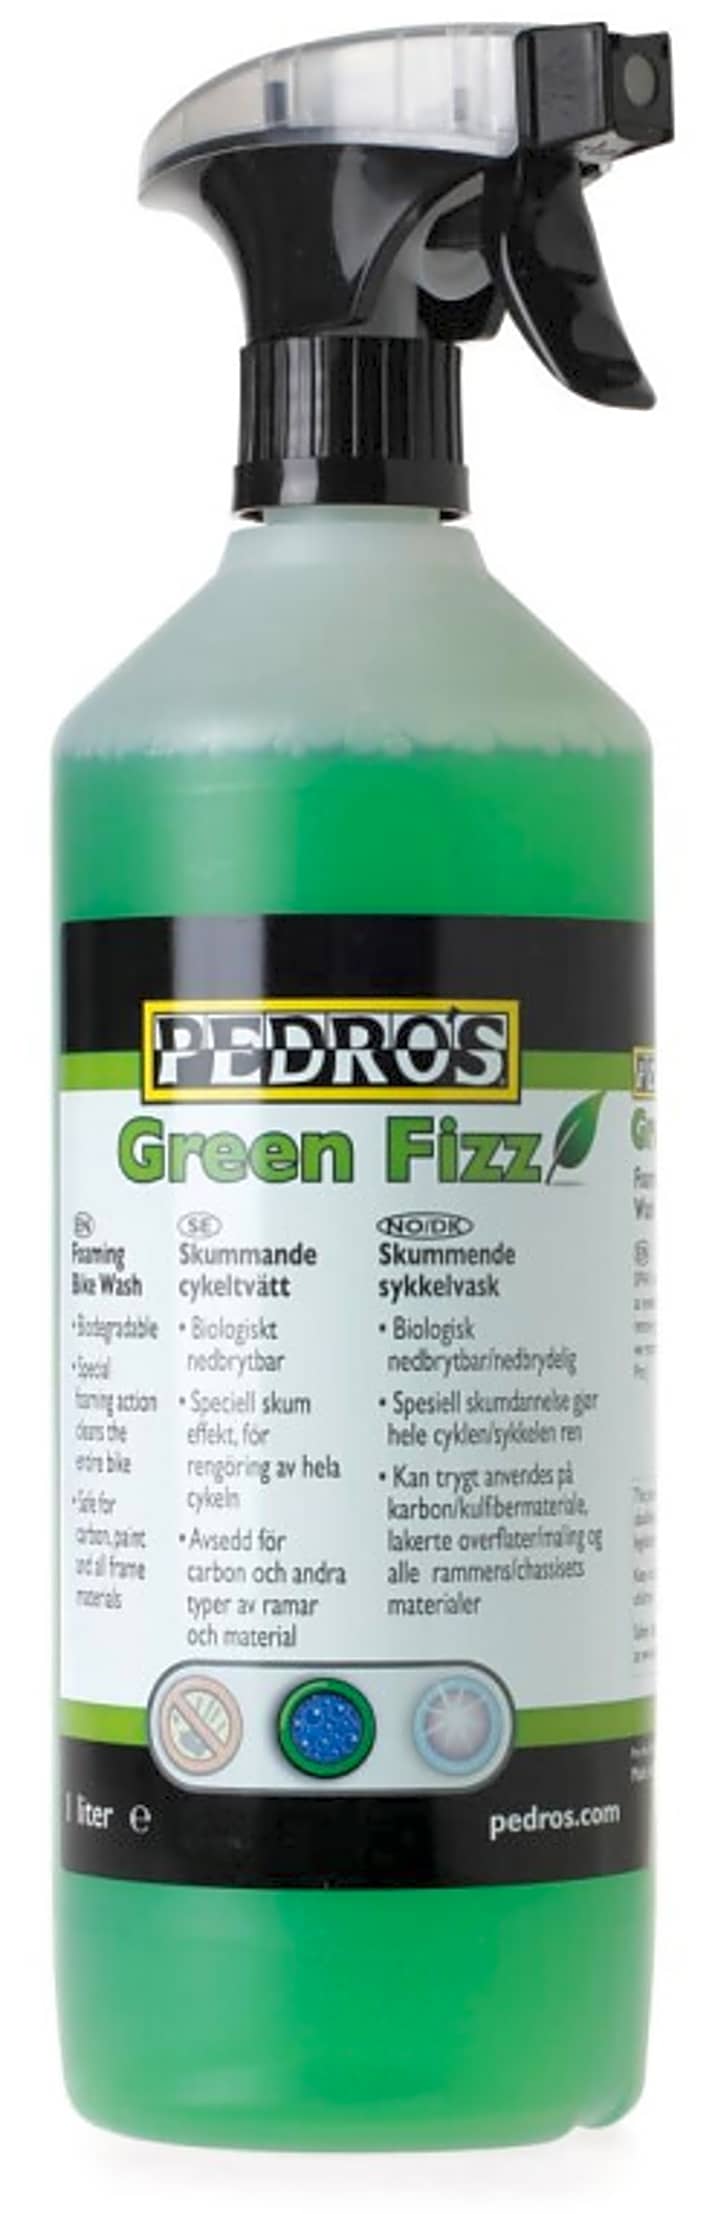   Der Green Fizz-Reiniger von Pedros im Test.